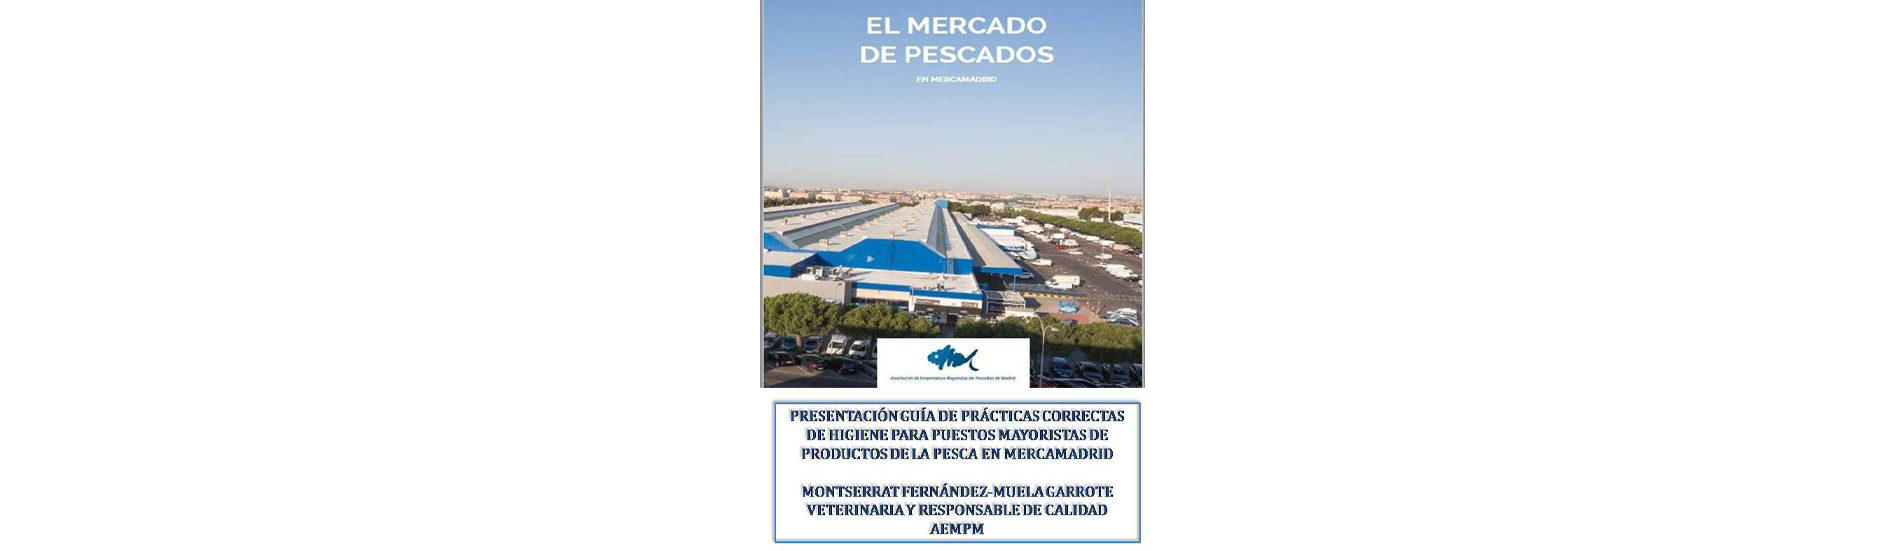 La Asociación de Empresarios Mayoristas de Pescados de Madrid ha presentado hoy la actualización de la Guía de Buenas Prácticas para las empresas ubicadas en el Mercado de Pescados en Mercamadrid.